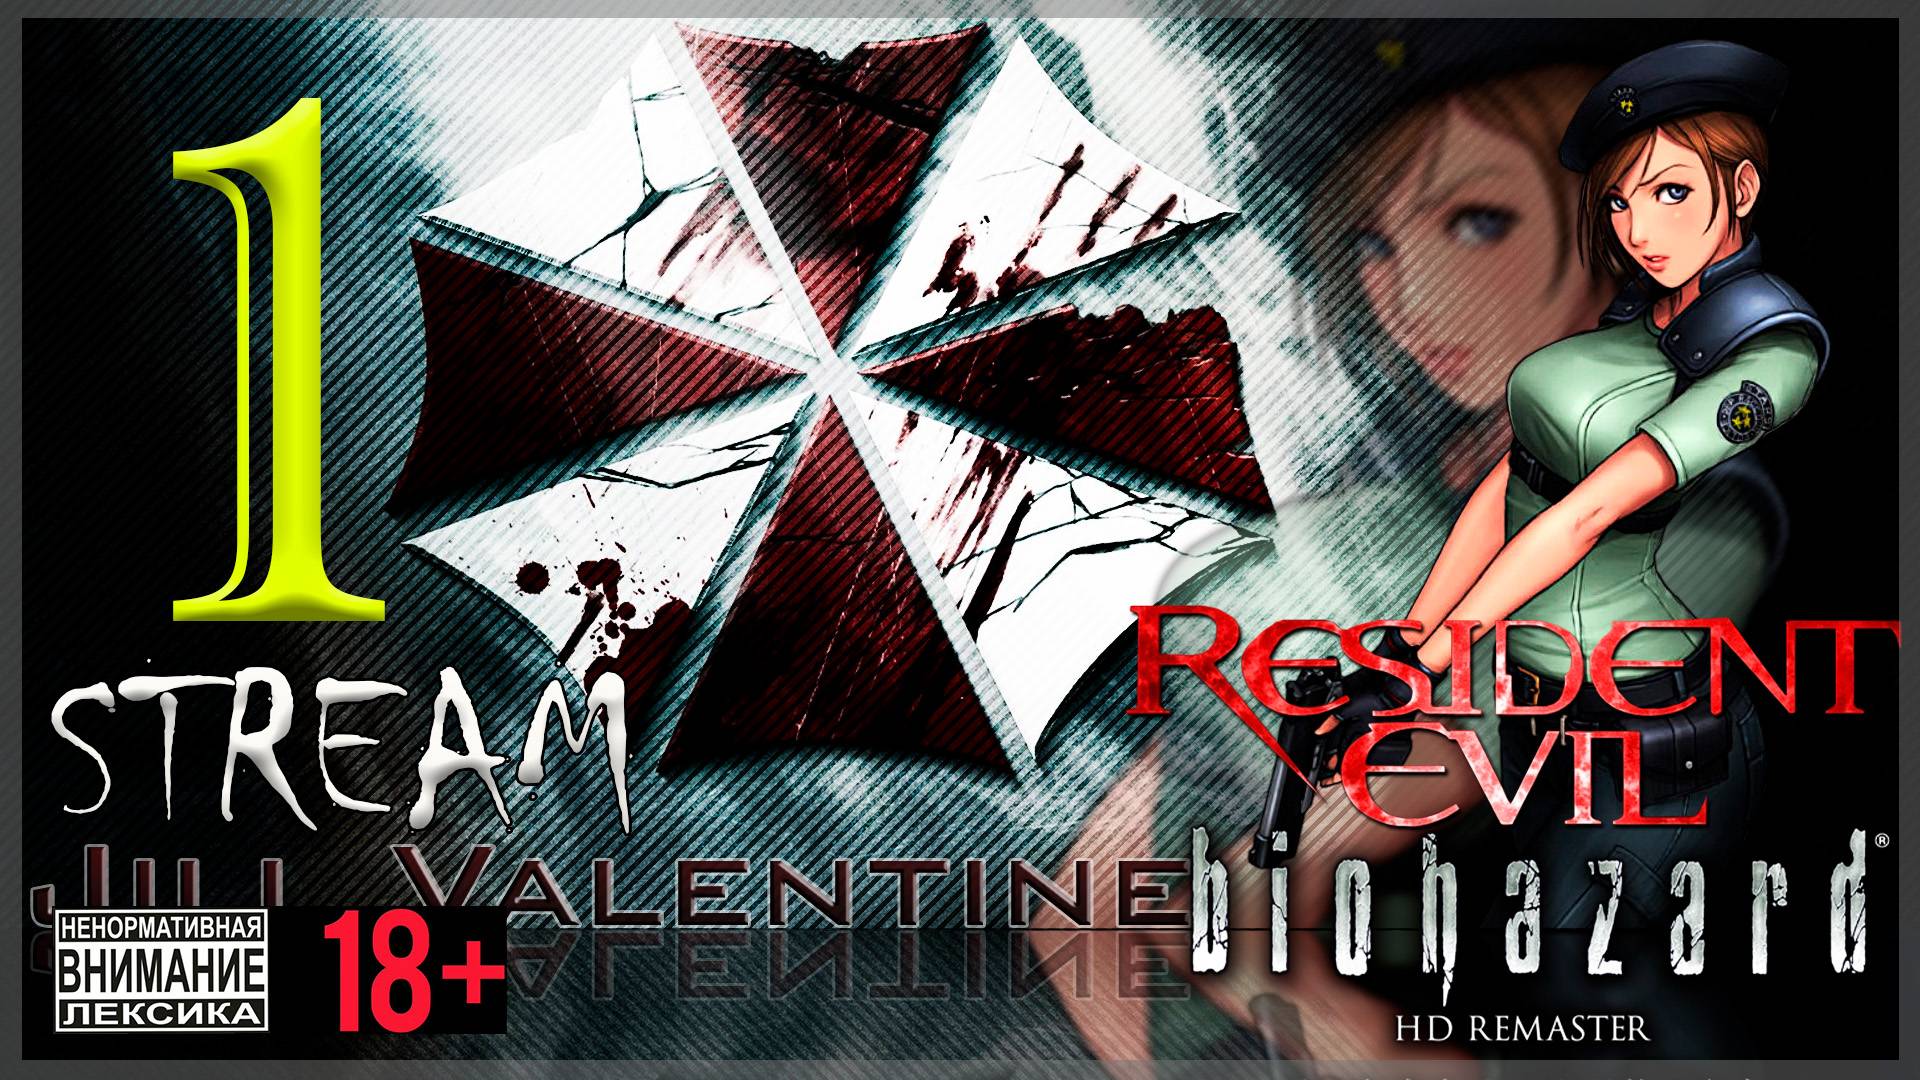 Stream - Первое прохождение Resident Evil - Biohazard HD REMASTER #1 Джилл